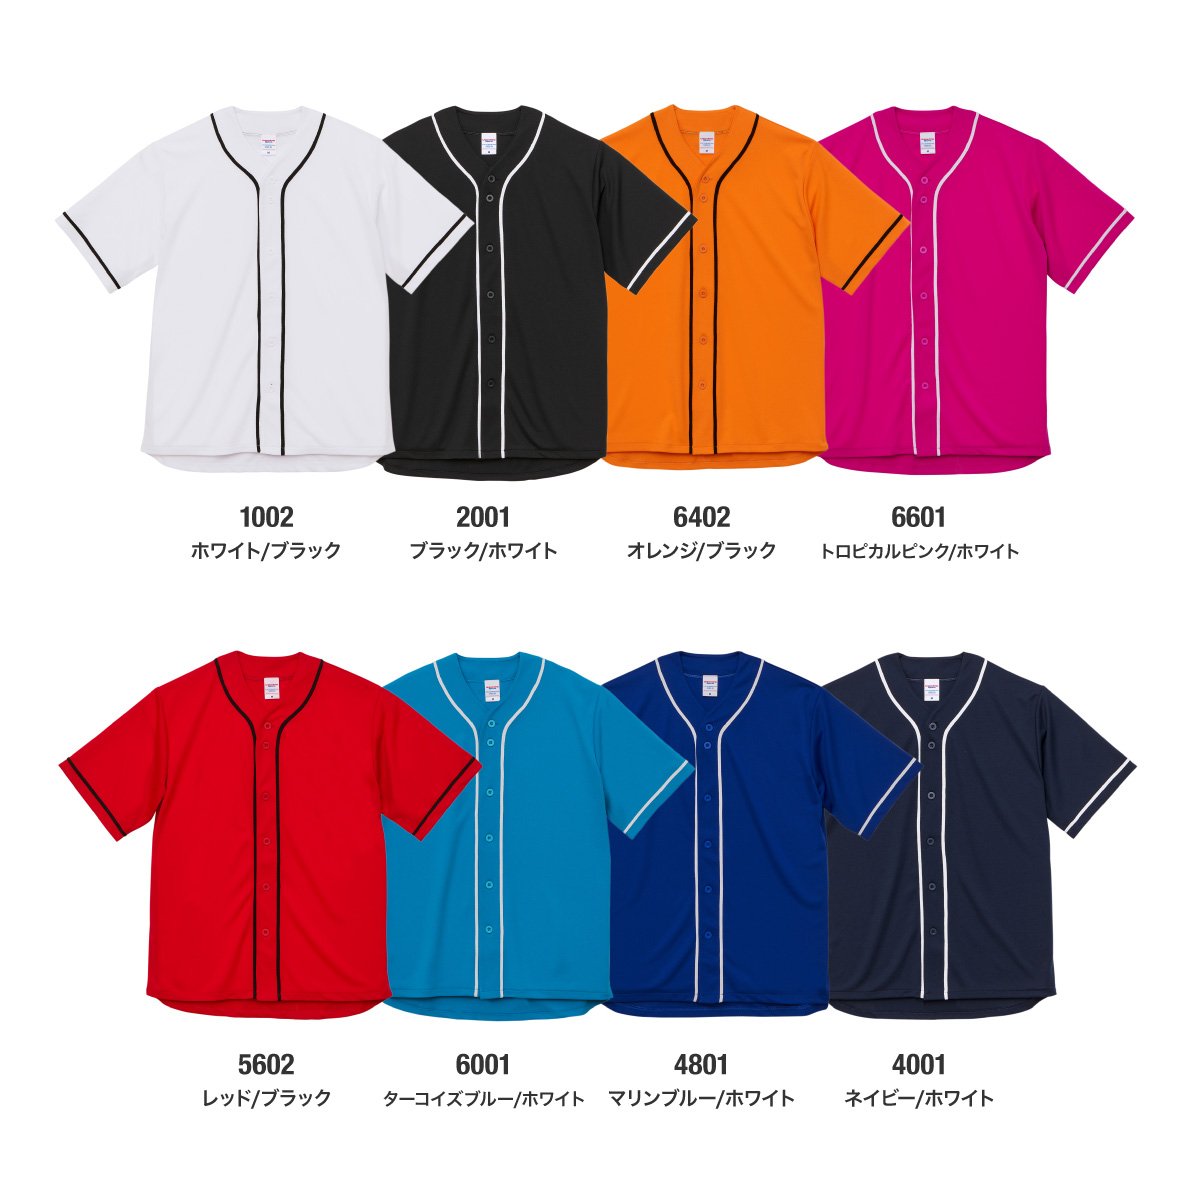 4.1オンス ドライアスレチック ベースボールシャツ | ビッグサイズ | 1枚 | 5982-01 | ターコイズブルー/ホワイト